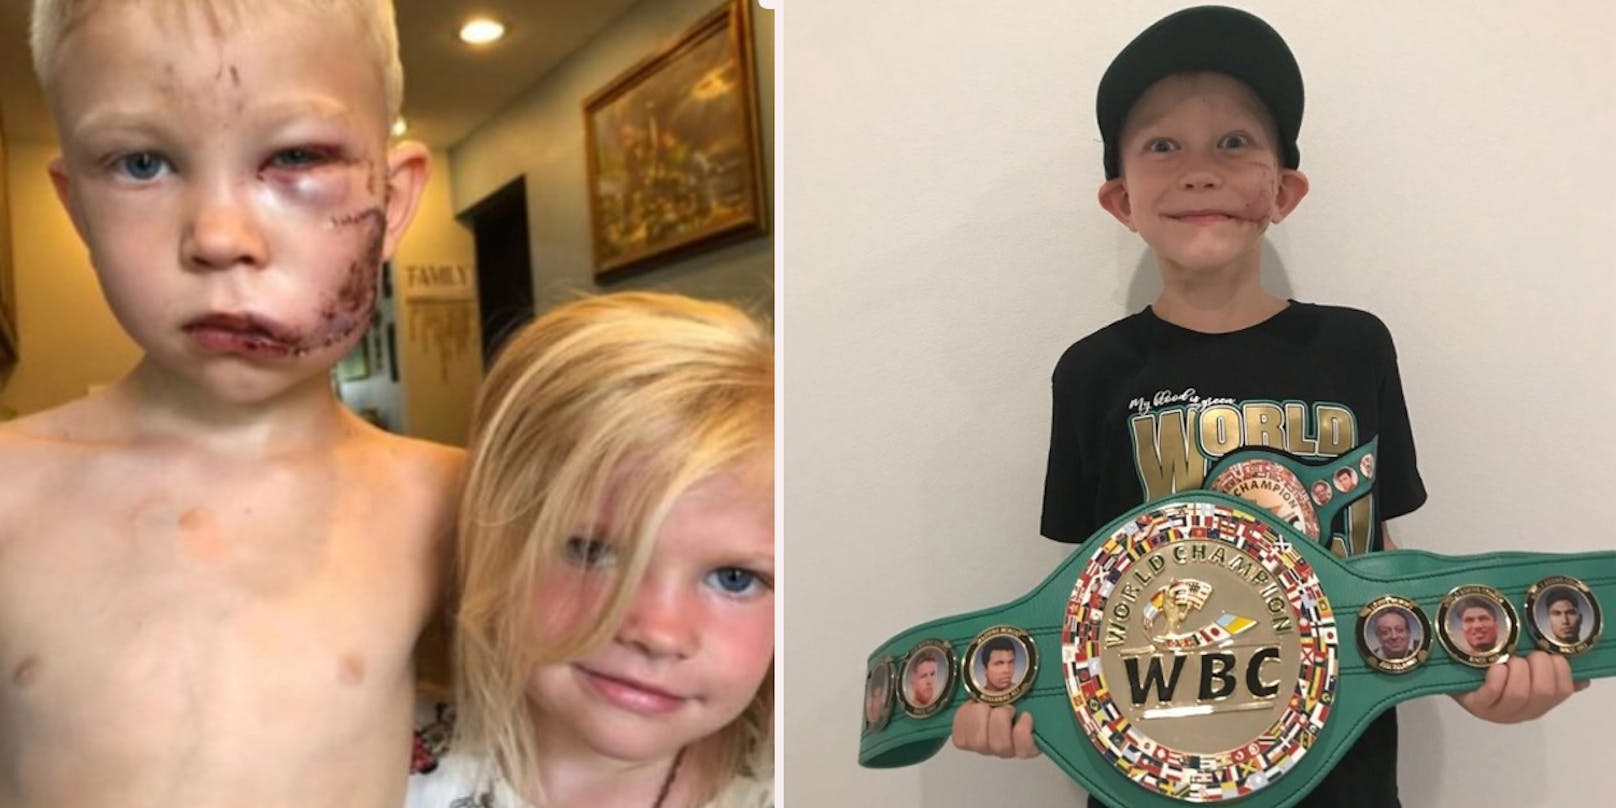 Bridger Walker rettete seine kleine Schwester, jetzt ist er WBC-Ehrenchampion.